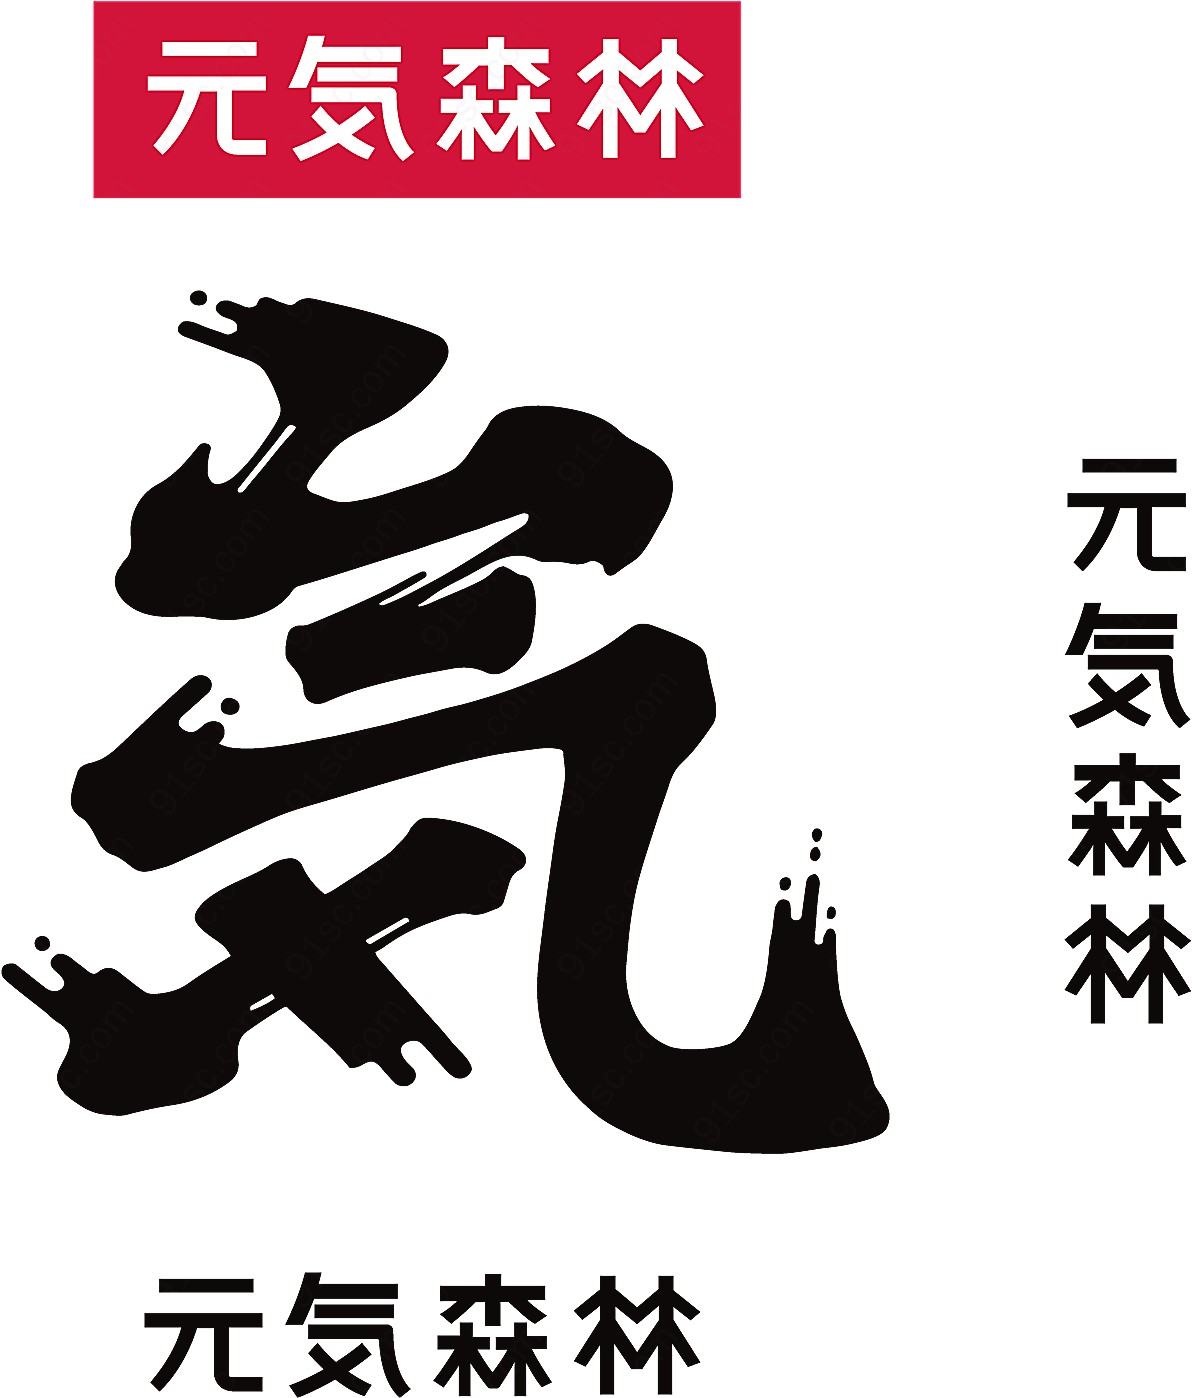 元气森林logo矢量餐饮食品标志